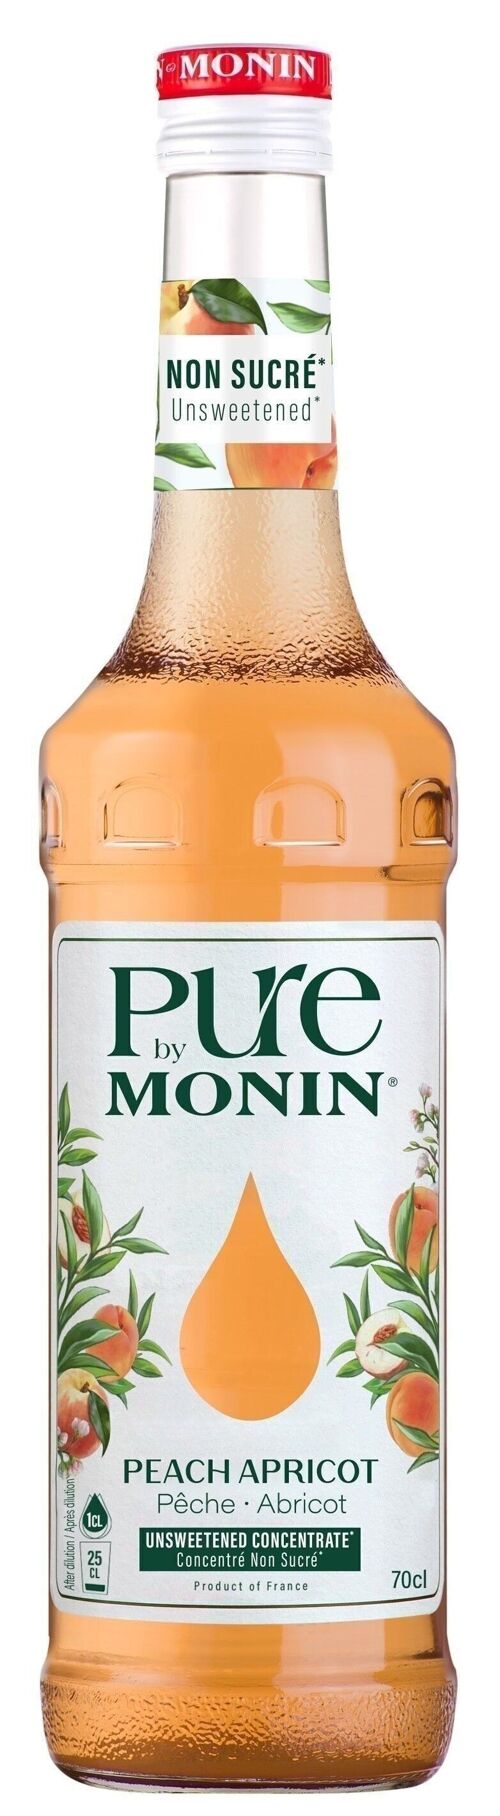 Pure by Monin - Pêche Abricot pour eau aromatisée ou cocktails de la fête des mères - Arômes naturels - 70cl